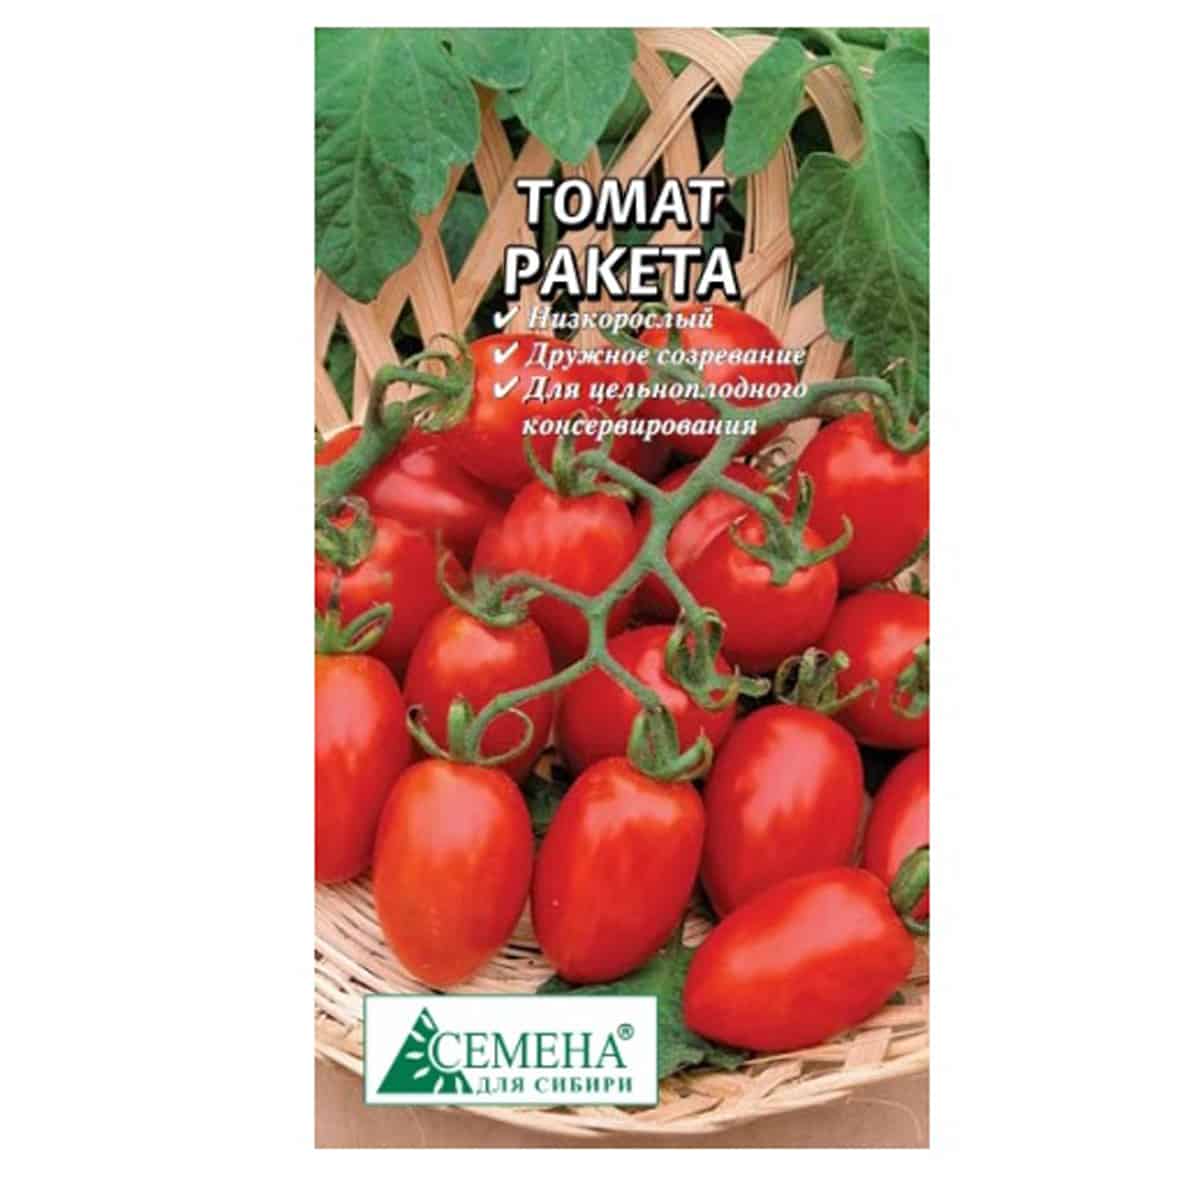 Томат ракета: характеристика и описание сорта, фото красных и желтых помидоров, отзывы огородников